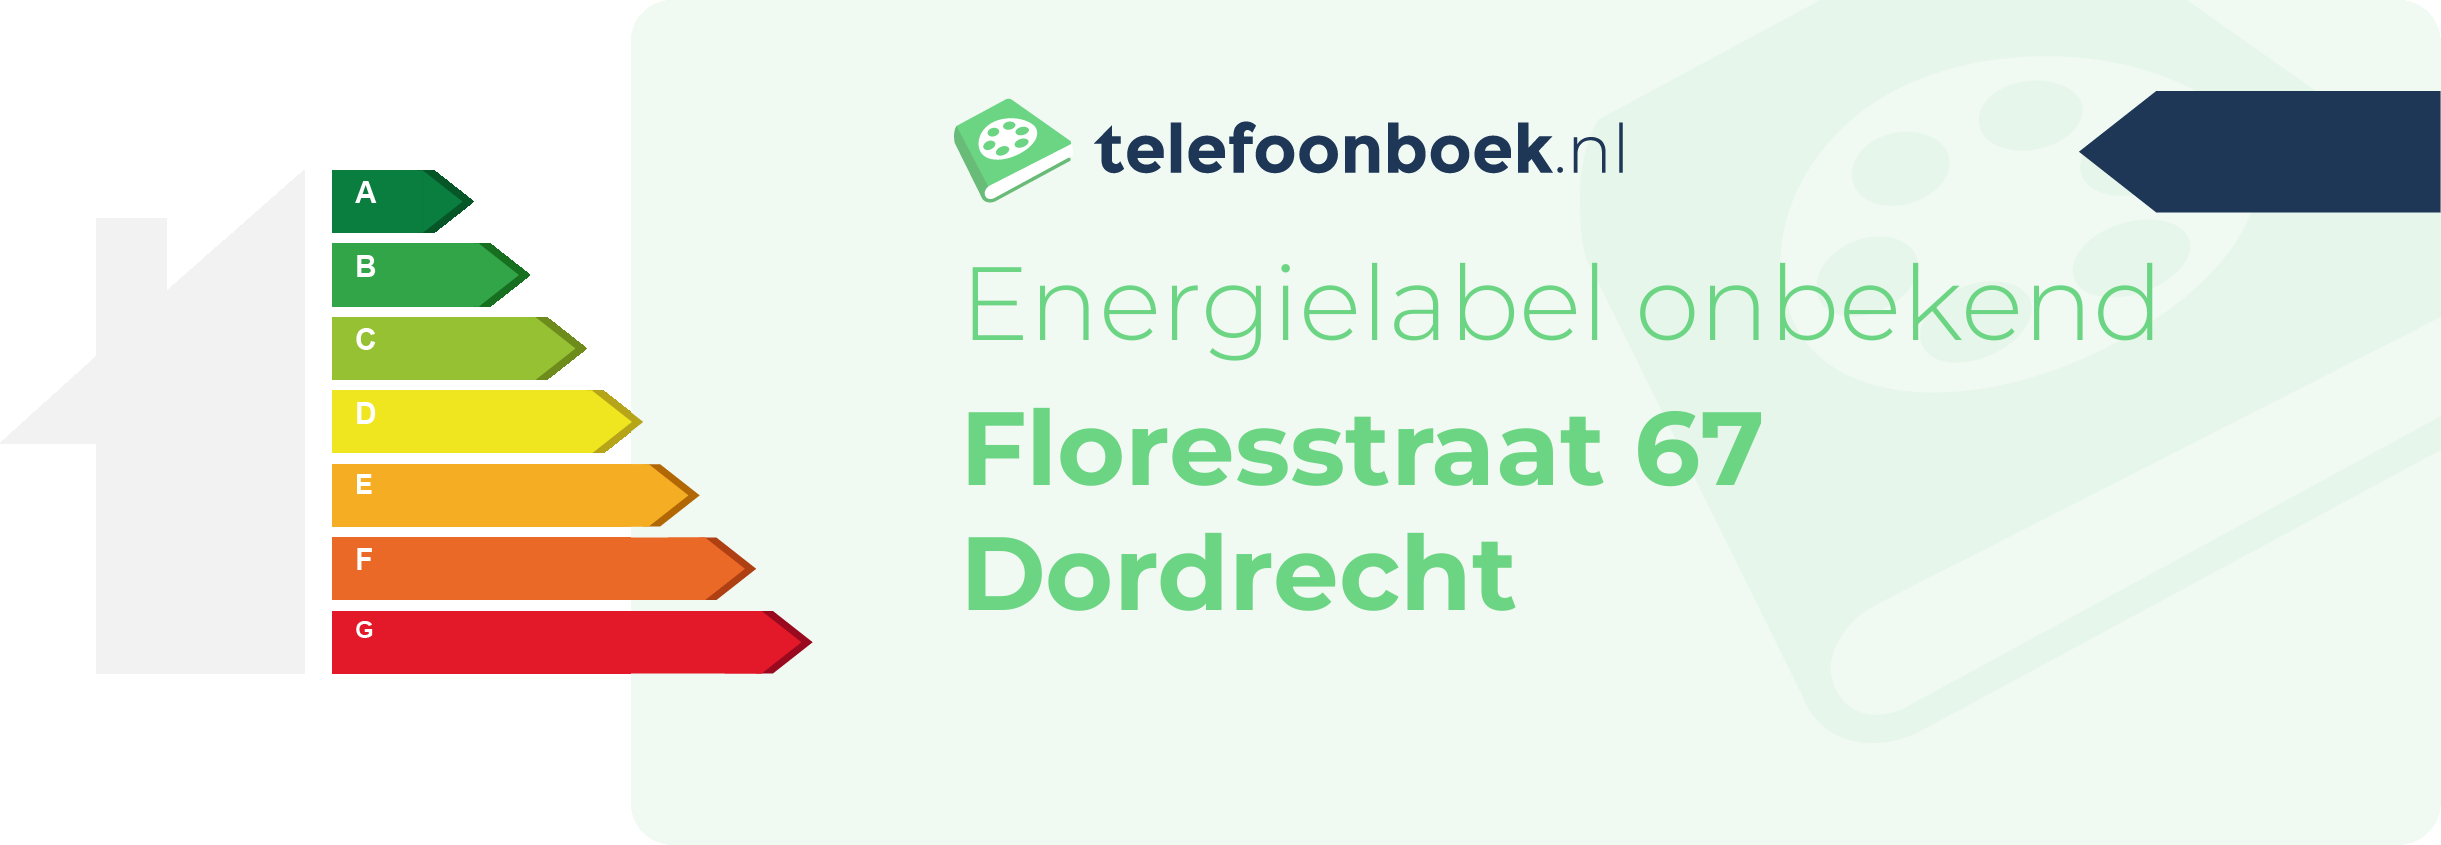 Energielabel Floresstraat 67 Dordrecht